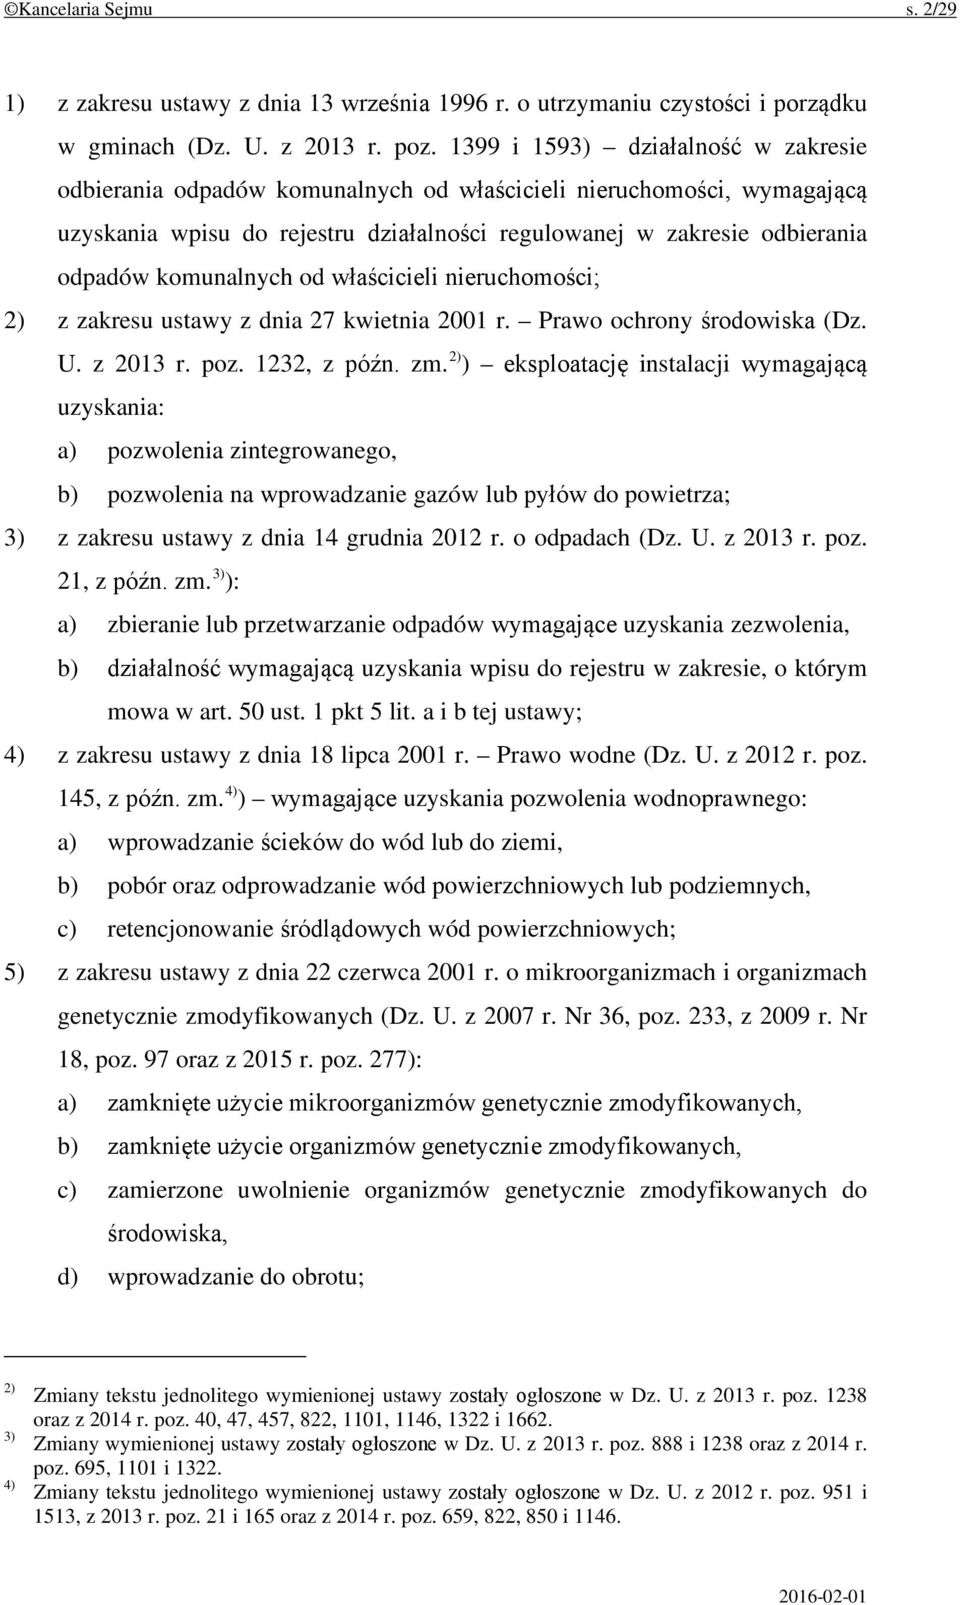 komunalnych od właścicieli nieruchomości; 2) z zakresu ustawy z dnia 27 kwietnia 2001 r. Prawo ochrony środowiska (Dz. U. z 2013 r. poz. 1232, z późn. zm.